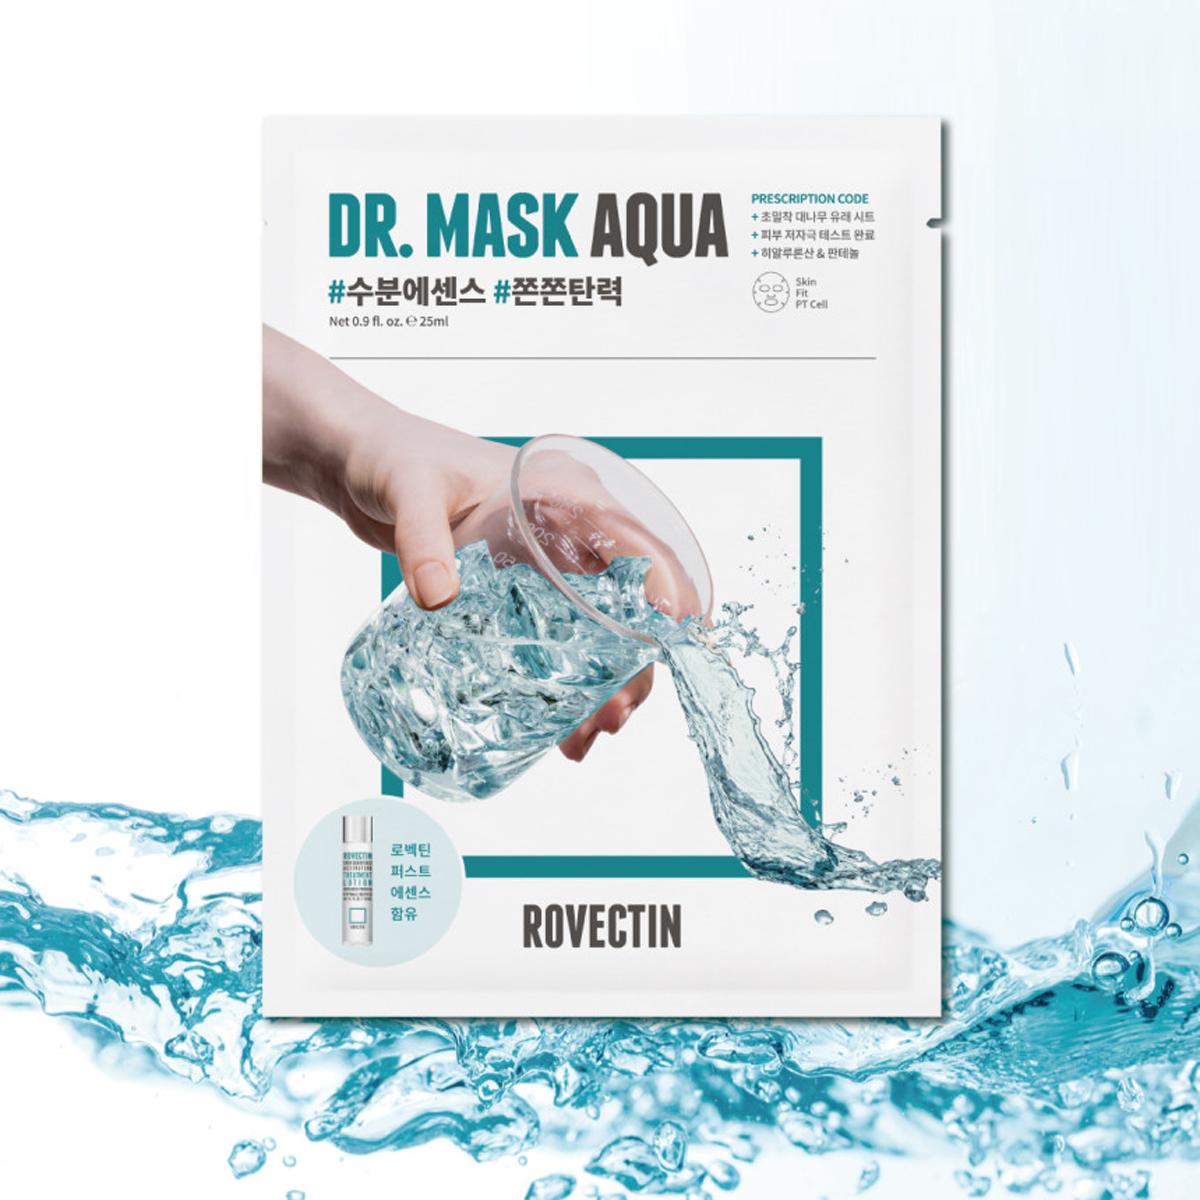 Doctor Mask Aqua